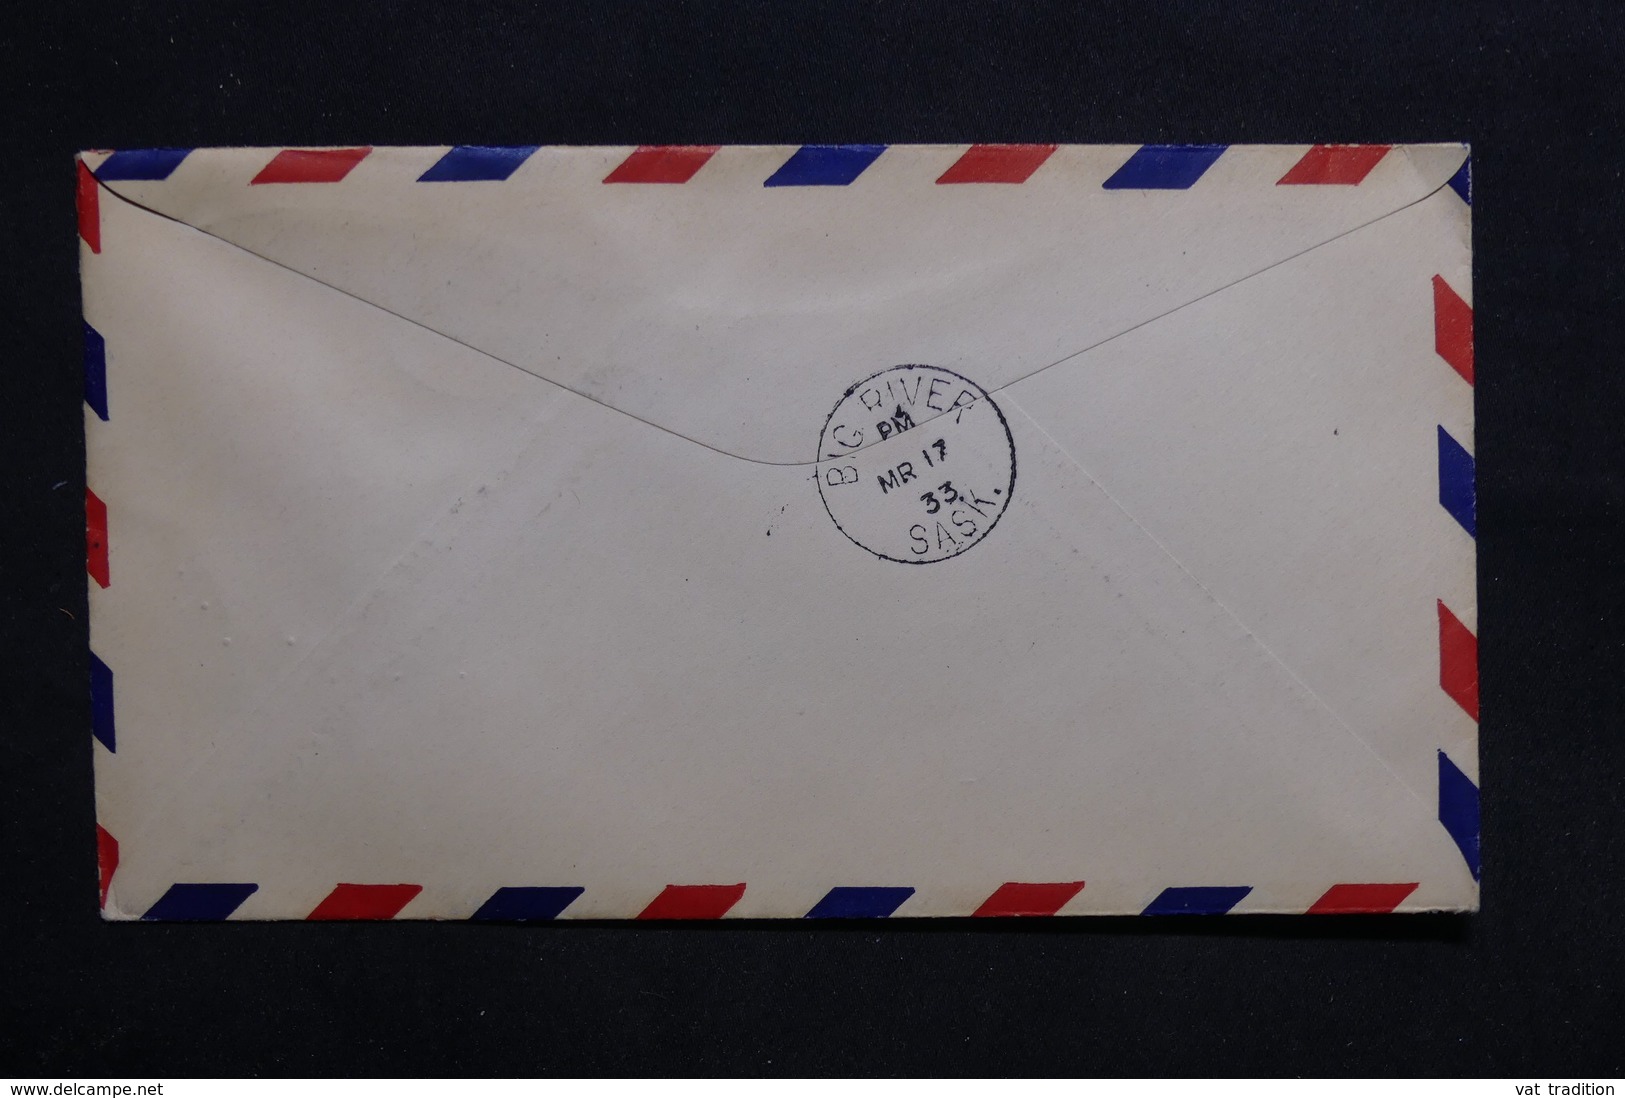 CANADA - Enveloppe 1 Er Vol Ile à La Crosse / Big River En 1933 - L 32802 - Lettres & Documents